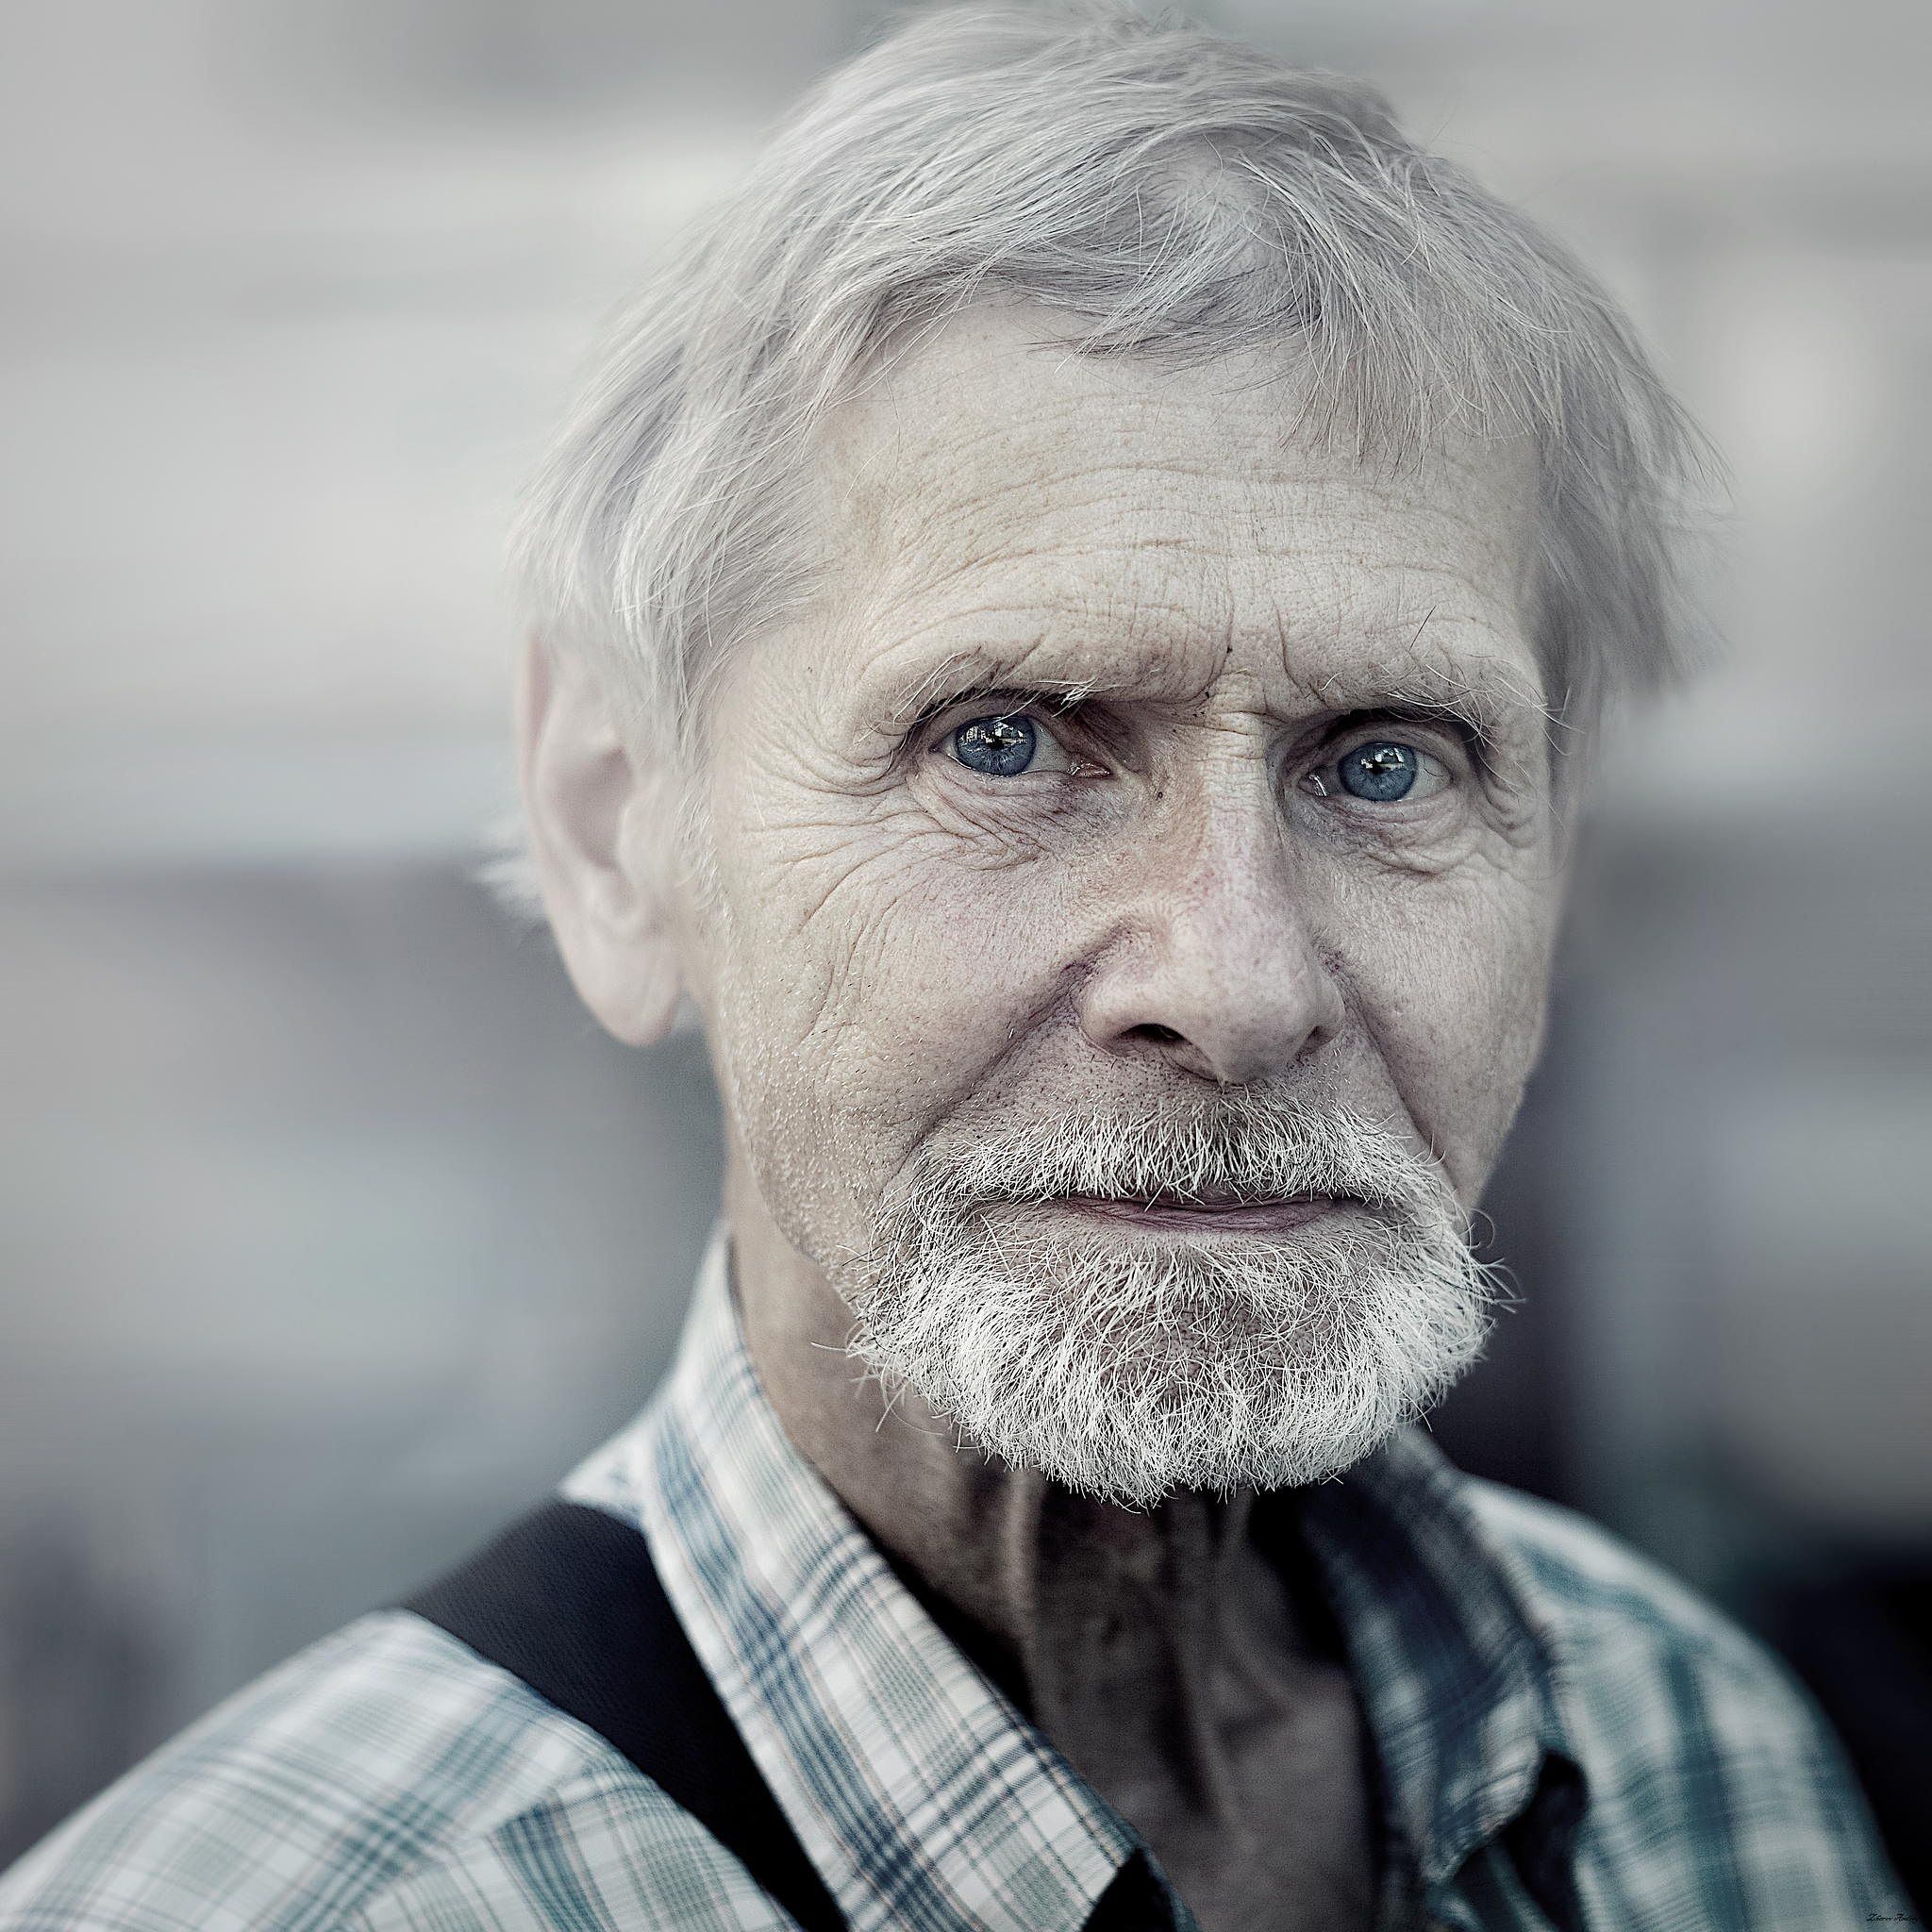 75 лет возраст мужчины. Фотопортрет старика. Пожилой мужчина. Портрет пожилого мужчины. Фотопортрет пожилого человека.